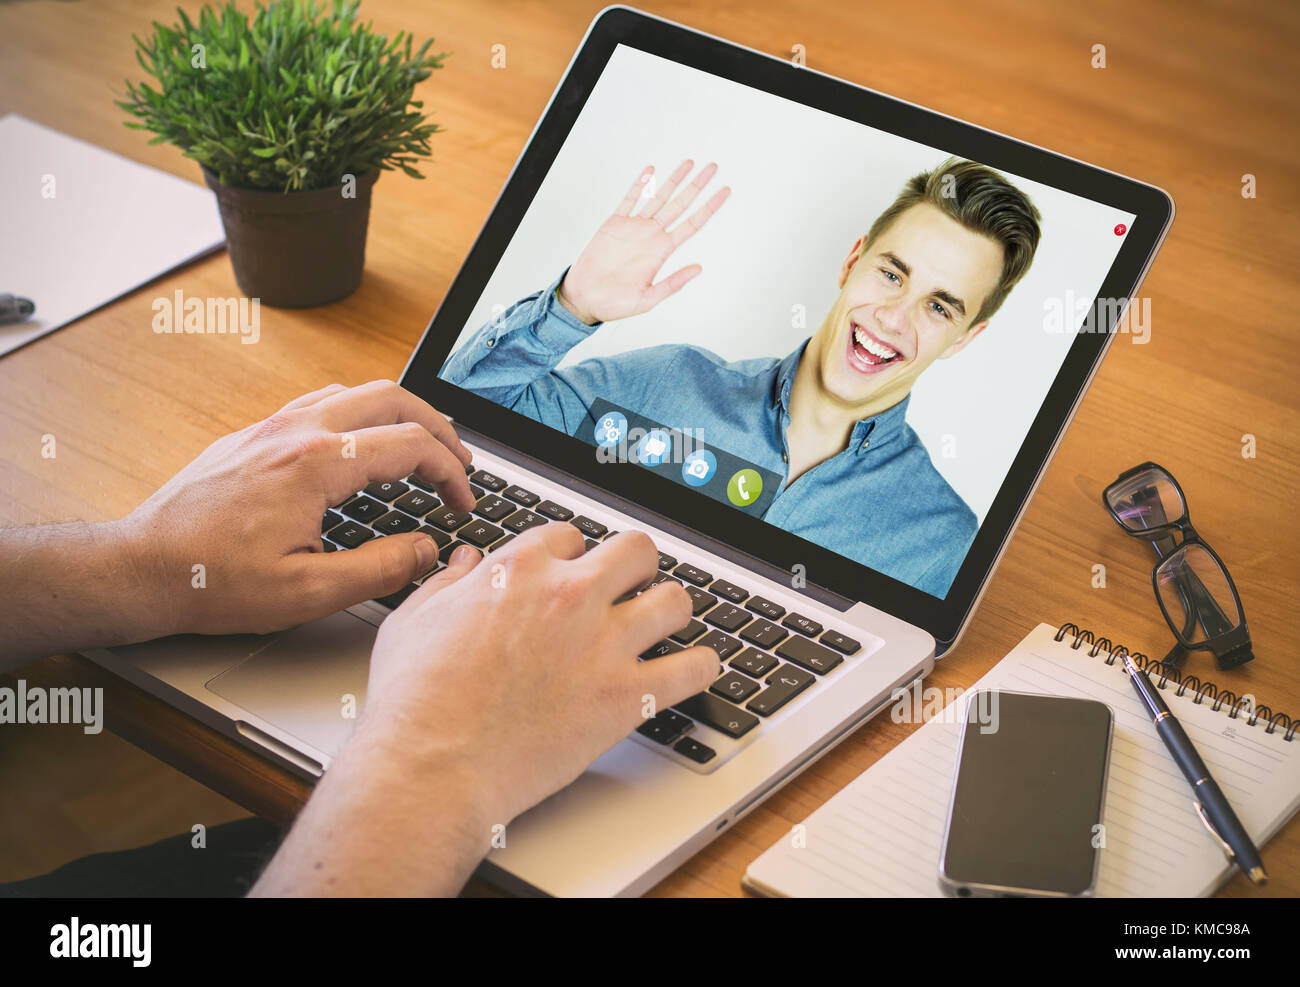 Proprietario della chat video online. close-up vista superiore dell'uomo chattare su laptop e un amico dire ciao sullo schermo. Foto Stock